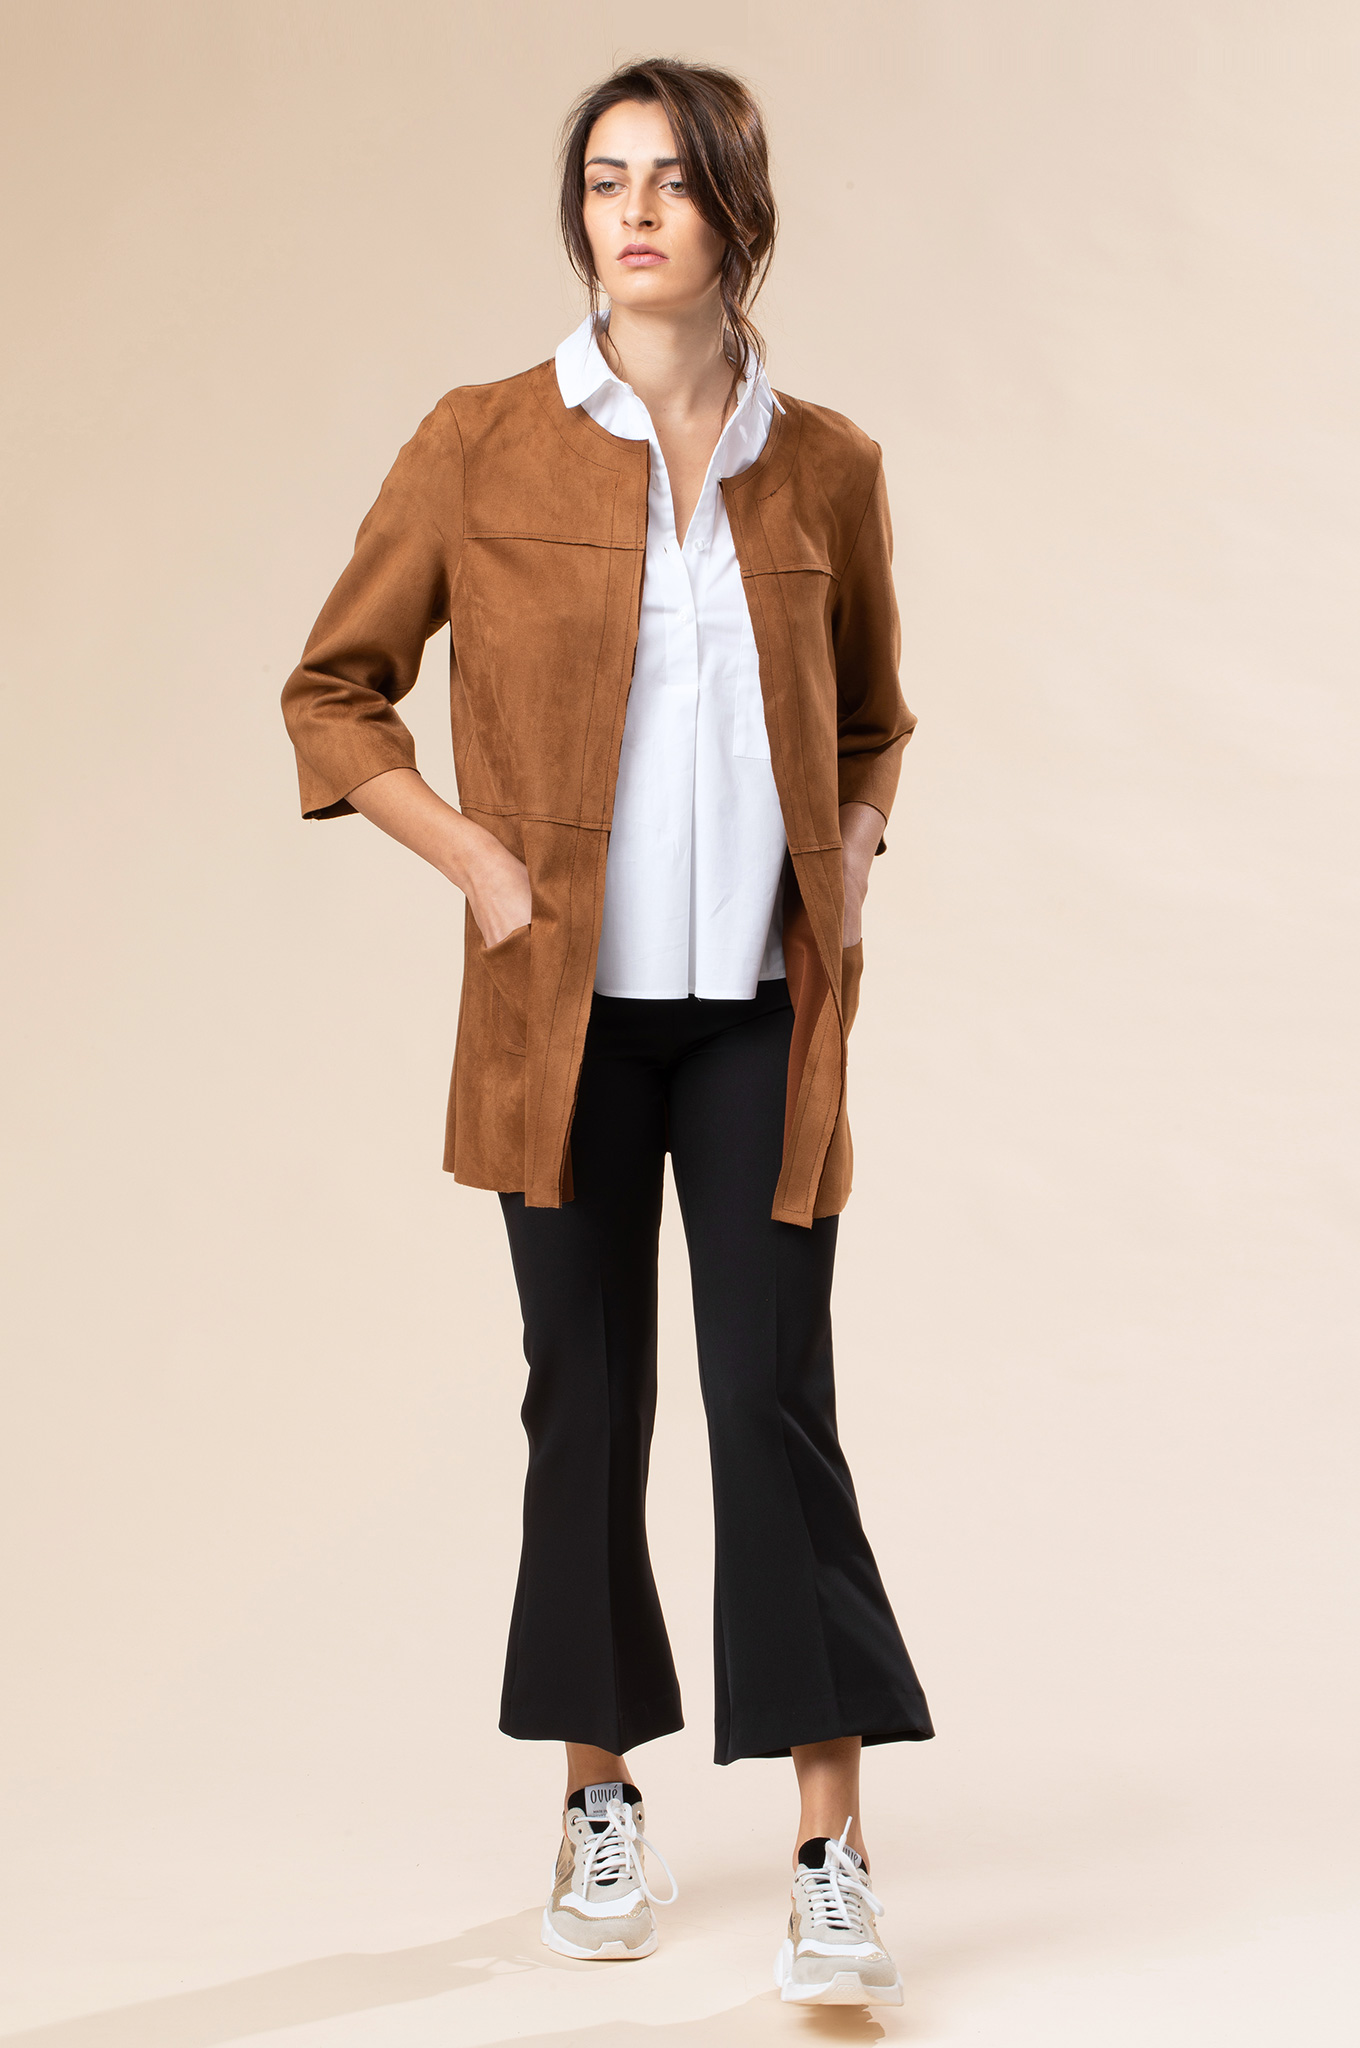 abbigliamento donna primavera 2020 Chiara B: giacca dainetto